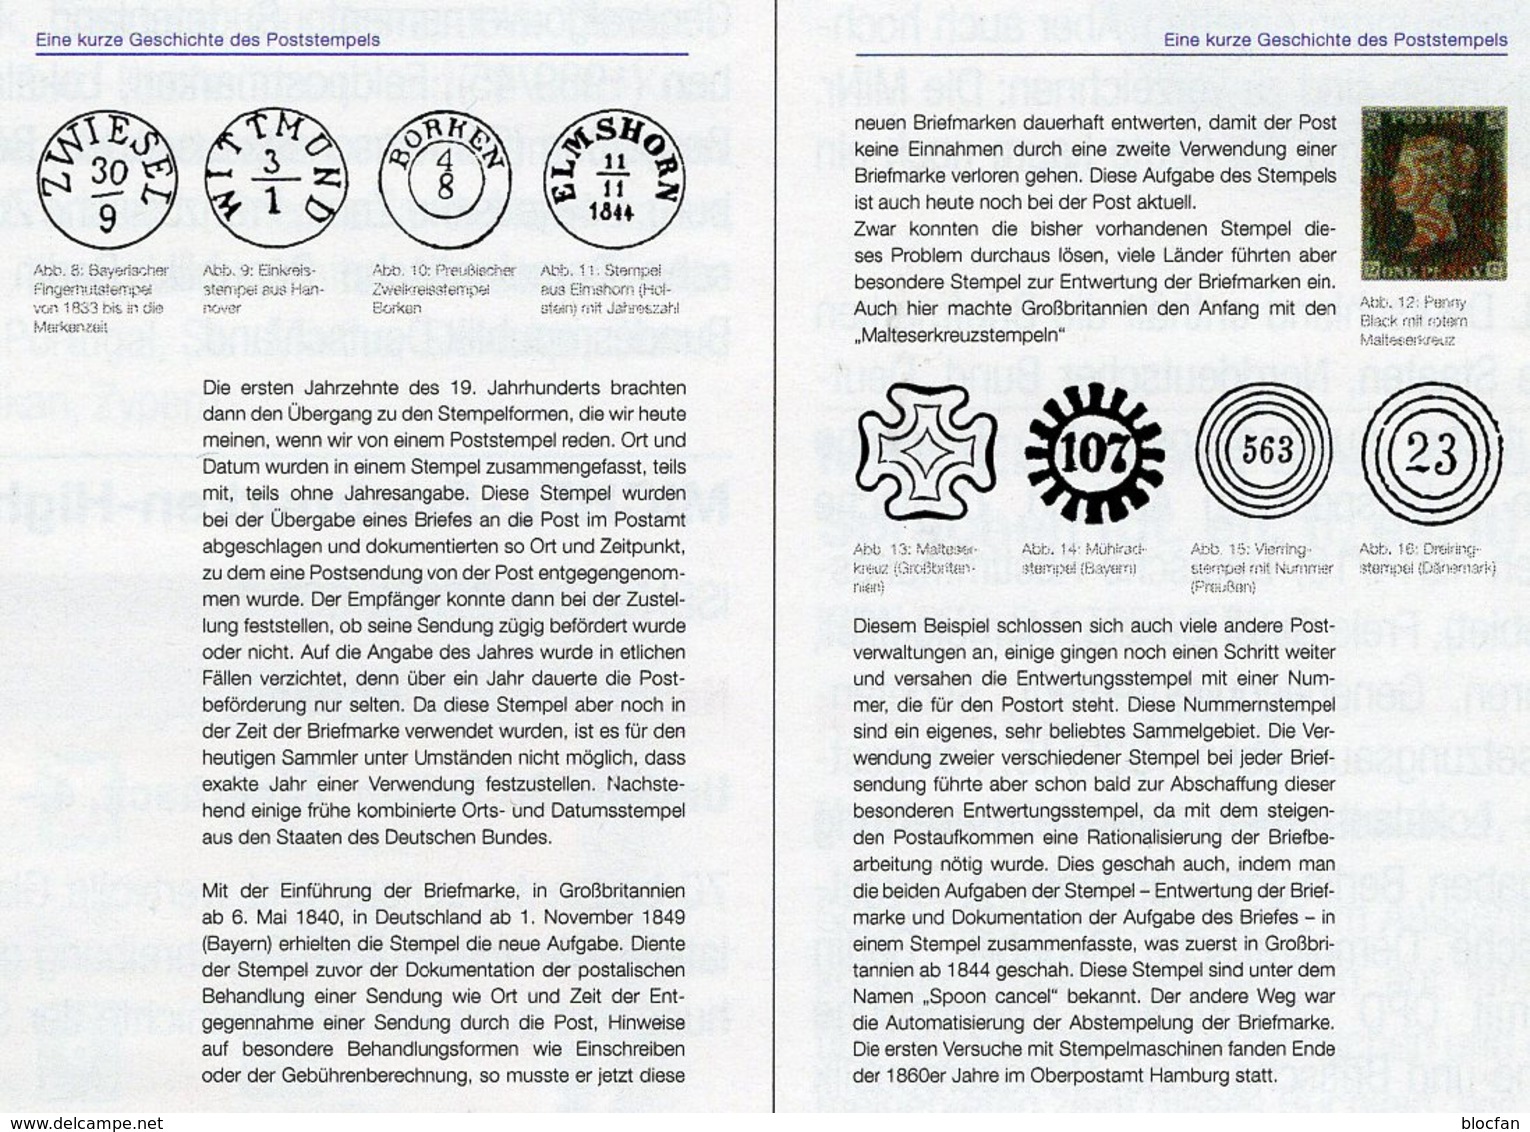 Stempel Verstehen Ratgeber 2020 New 50€ MICHEL Briefmarken Stempelarten Wert Bestimmen Stamps ISBN978 3 95402 252 6 - Philatelie